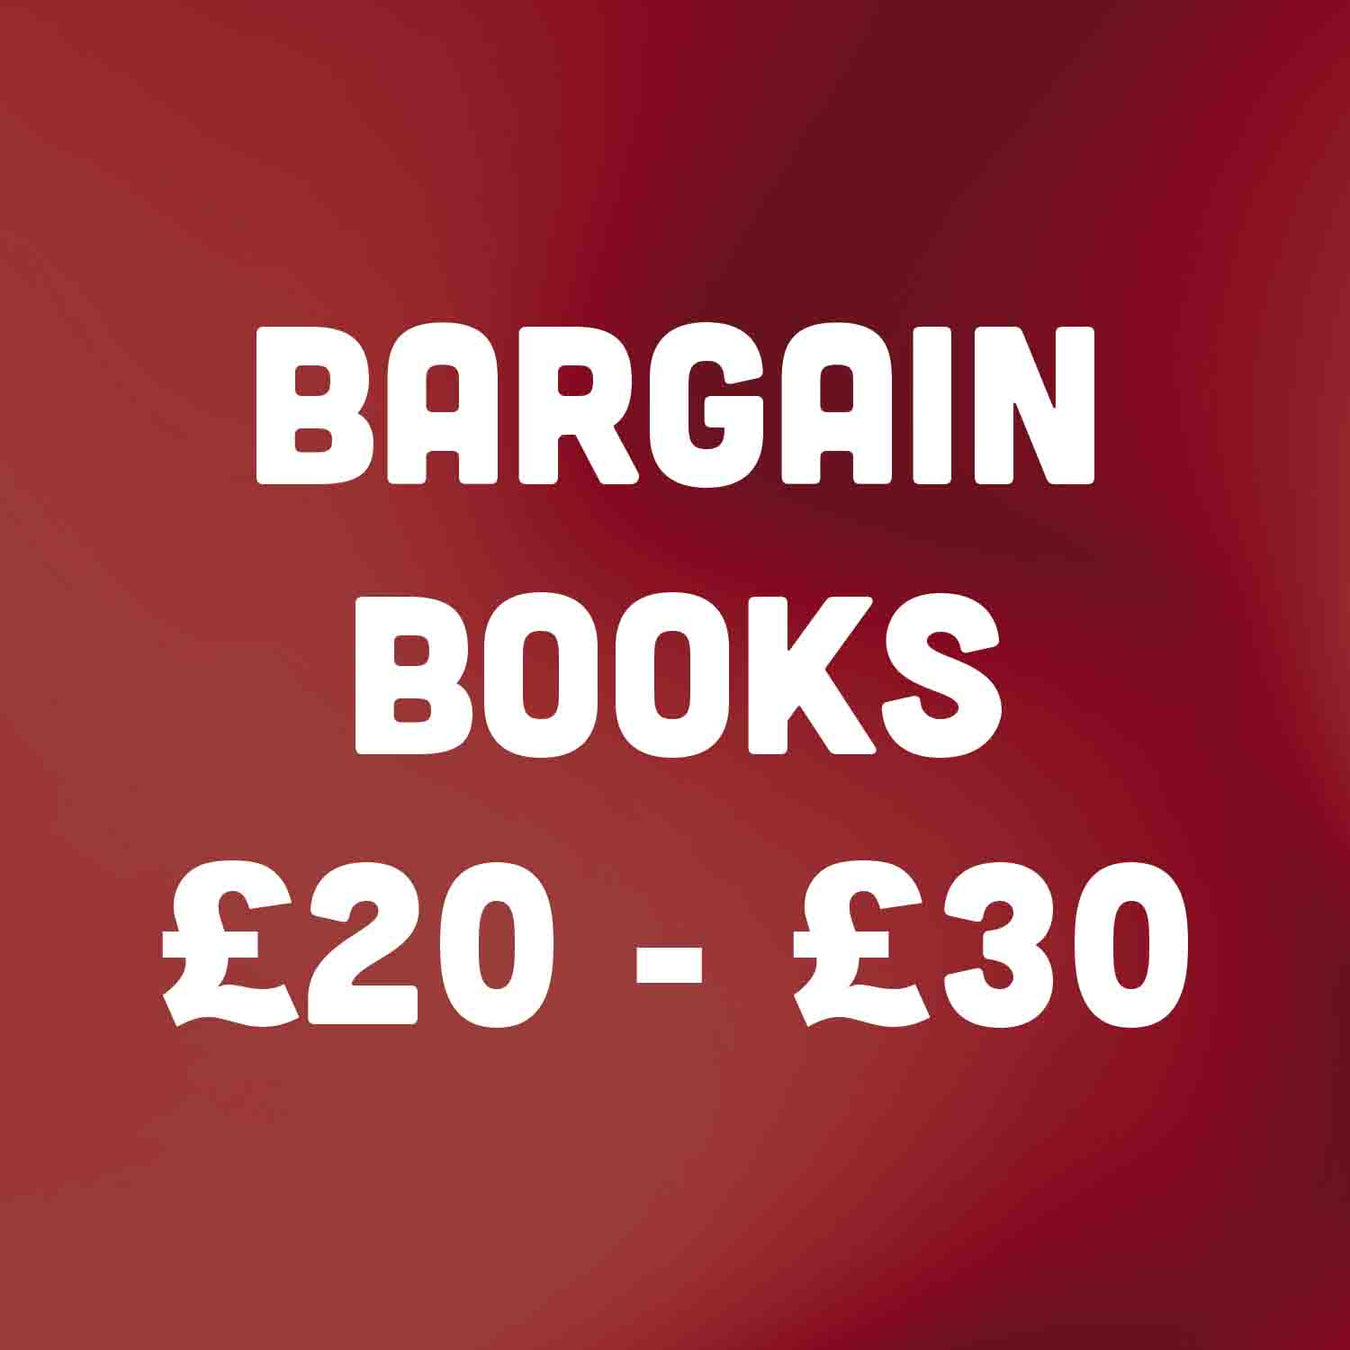 Bargain Books for £20 - £30